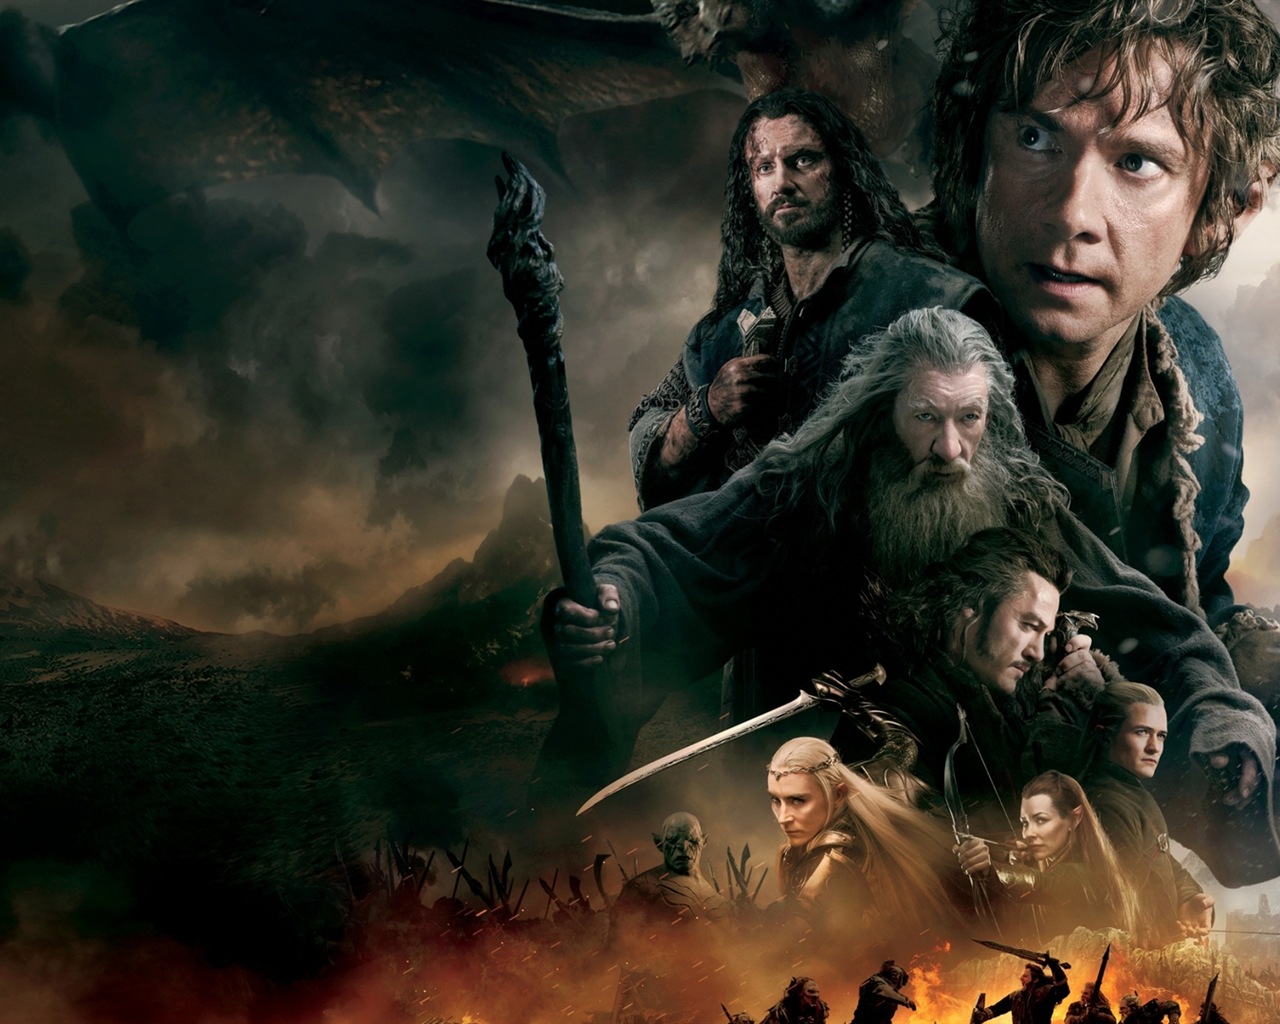 El Hobbit: La Batalla de los Cinco Ejércitos, fondos de pantalla de películas de alta definición #10 - 1280x1024